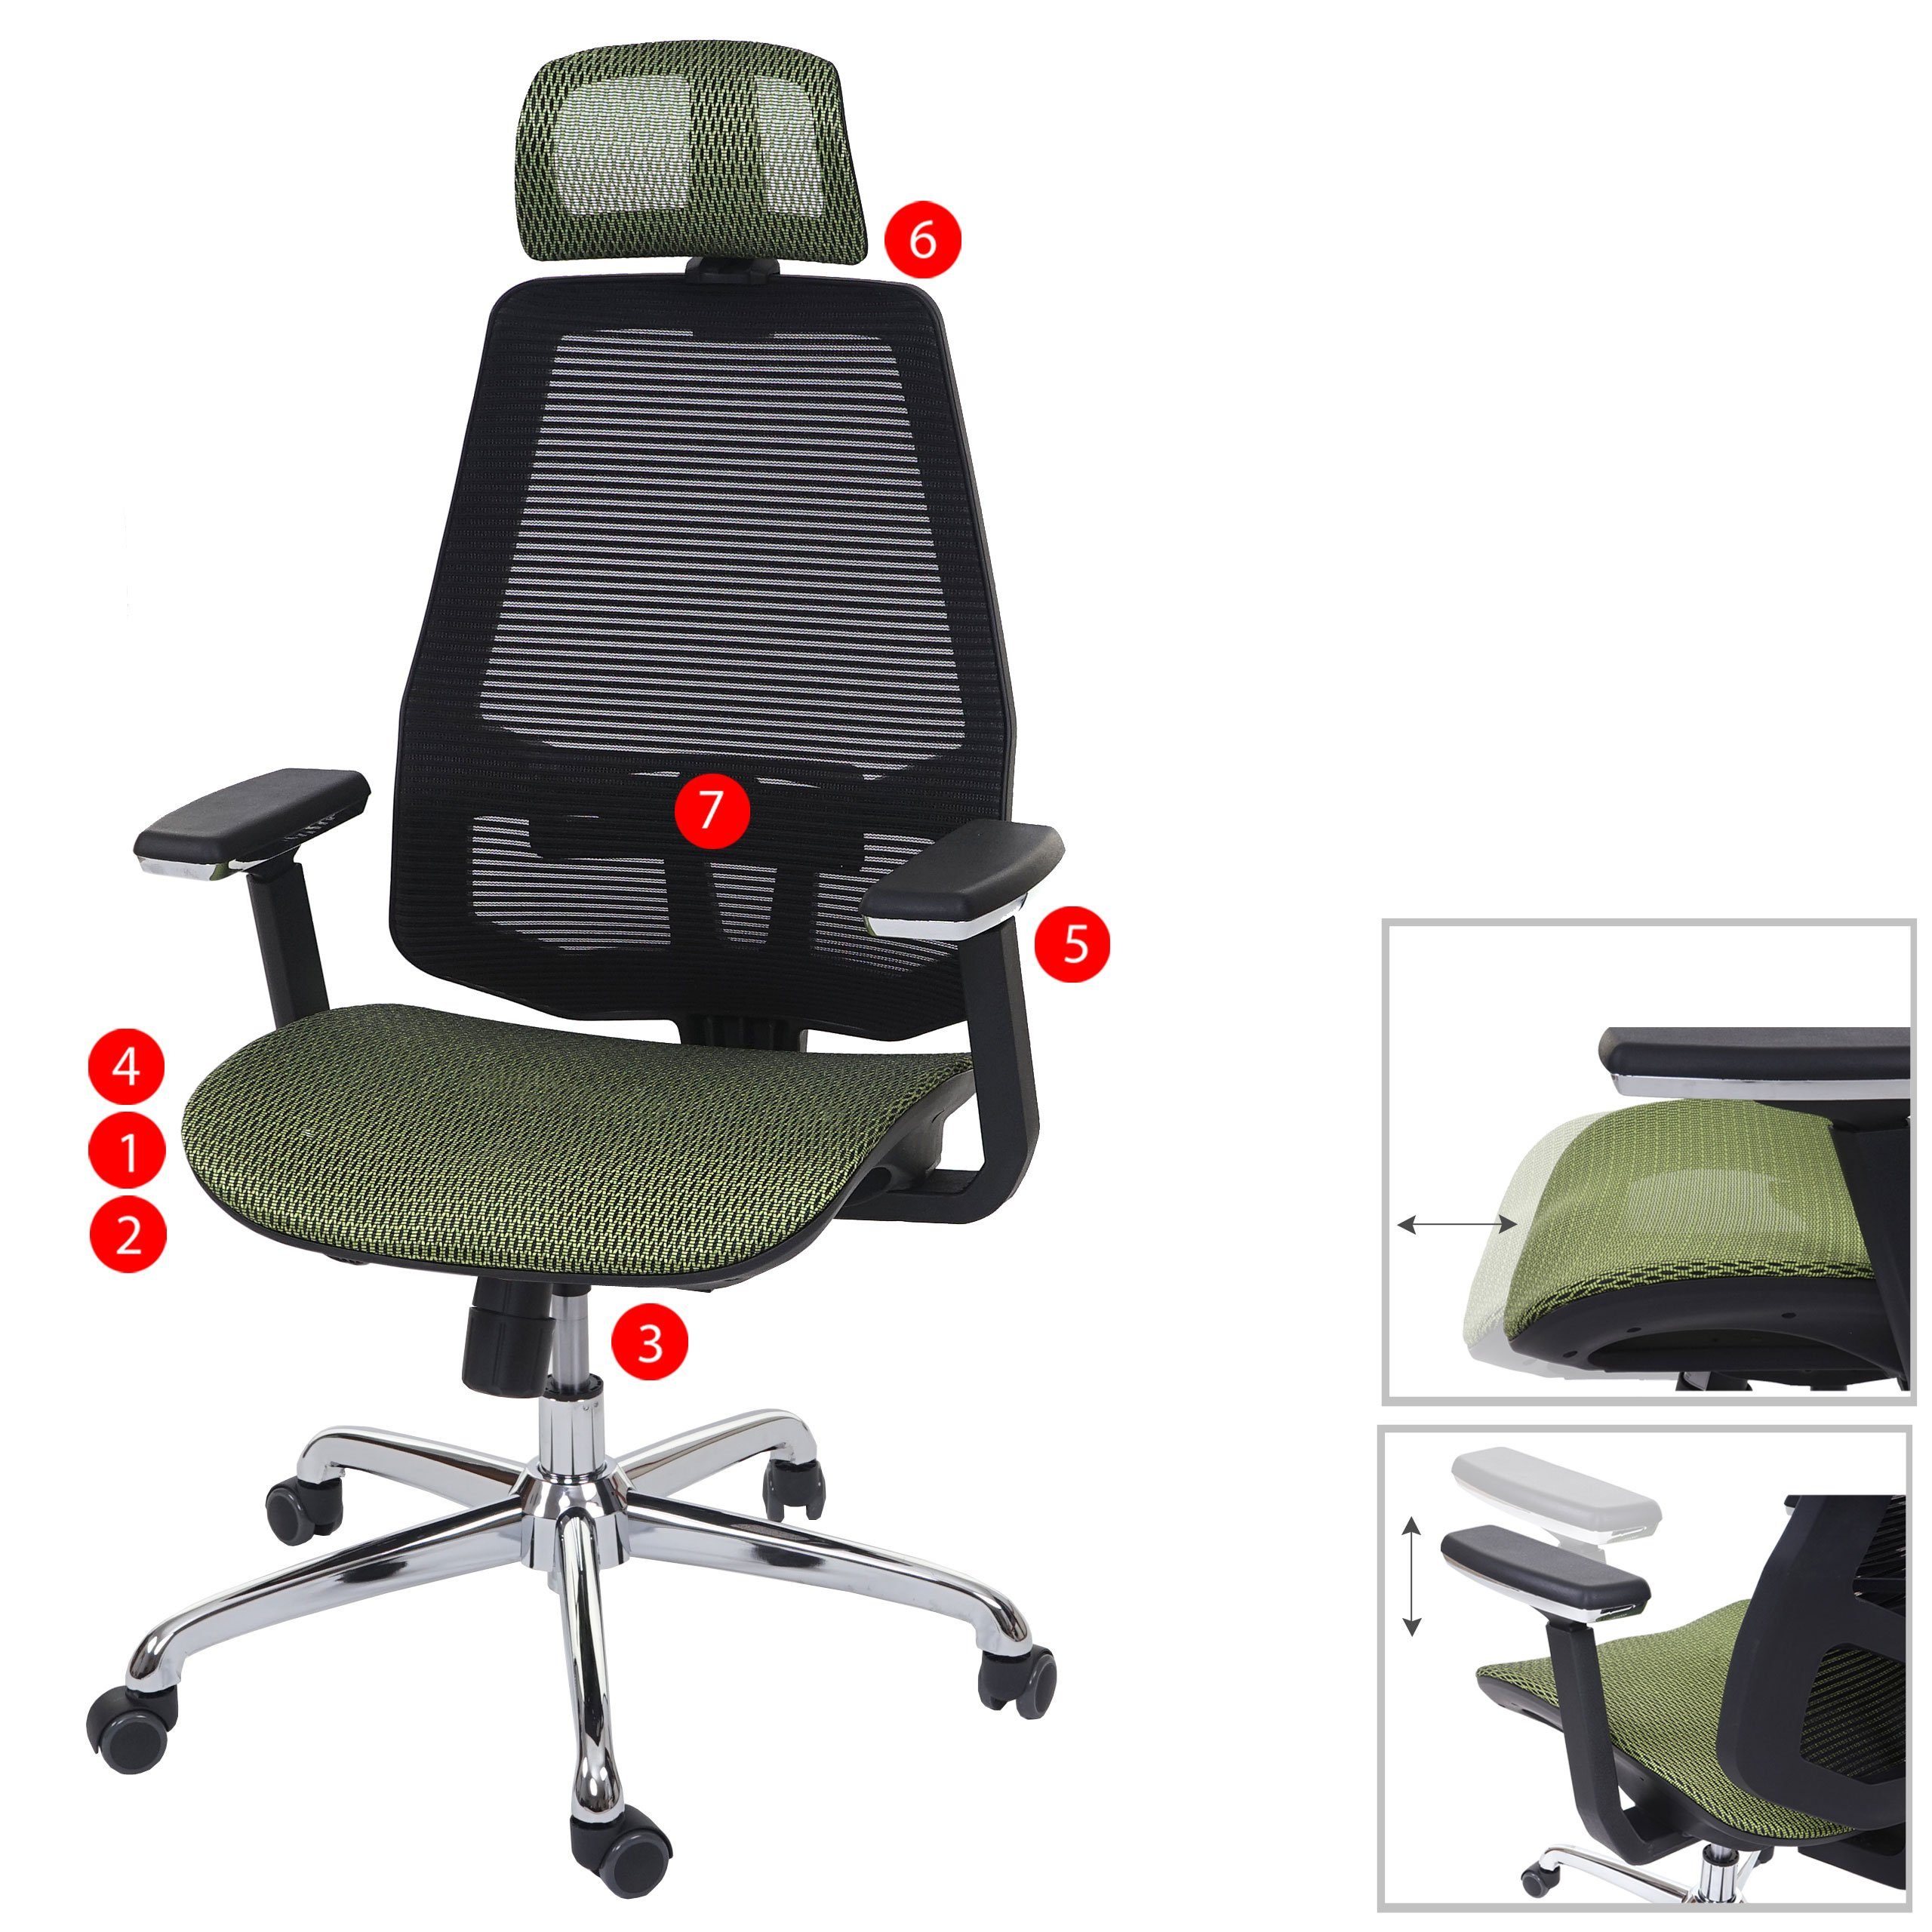 MCW Schreibtischstuhl MCW-A58, Armlehnen Netzbespannung Luftzirkulation höhenverstellbar, grün,schwarz verbessert